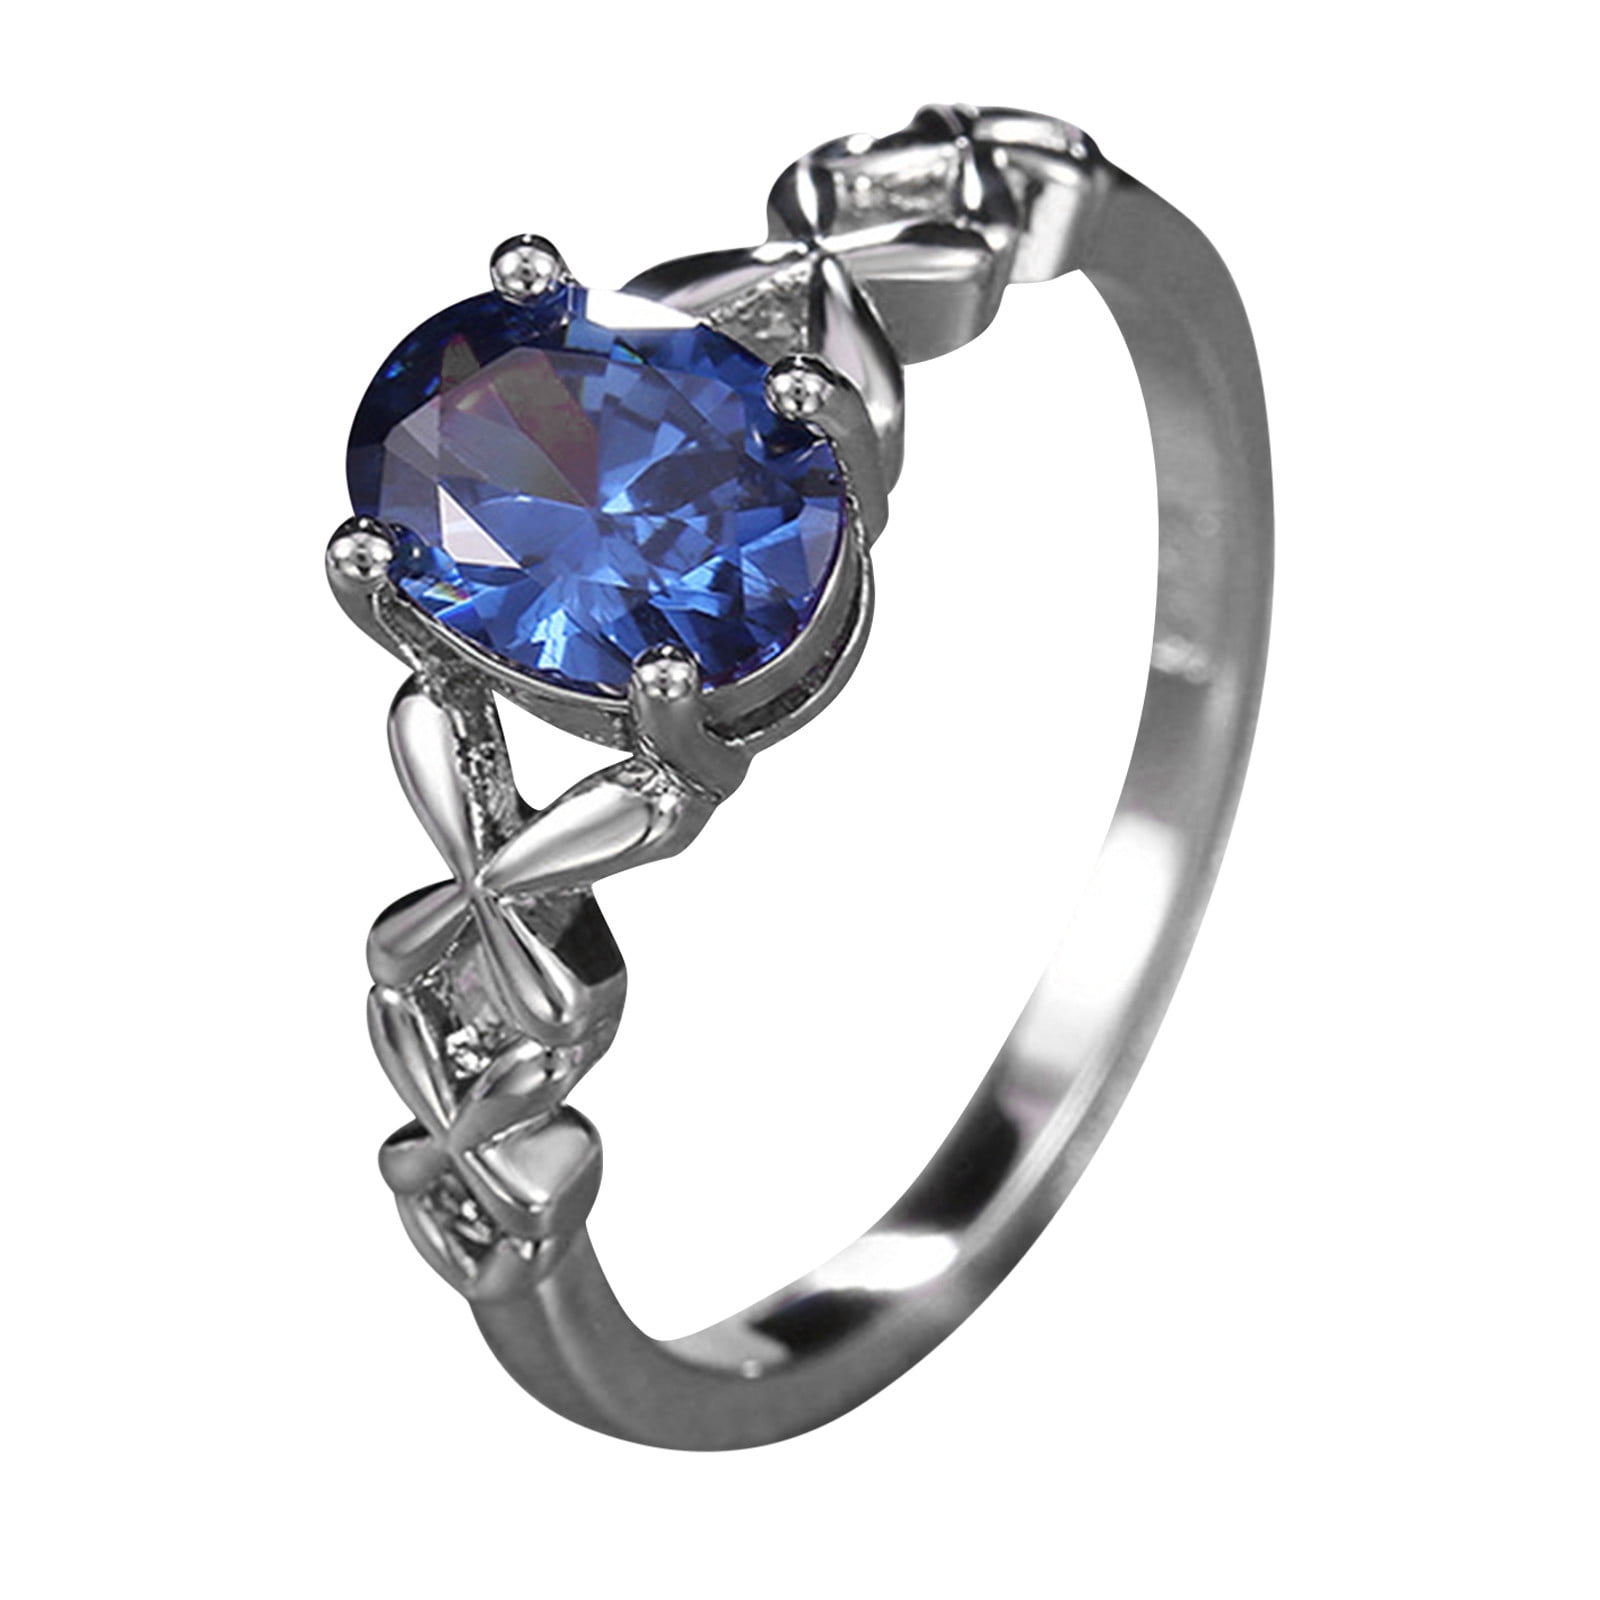 Milangirl Female Big Blue Stone Ring Luxury Retro Wedding Cubic Zirconia Ring  Female Fashion Engagement Ring Jewelryenga Ring Size 6 Main Stone Color blue